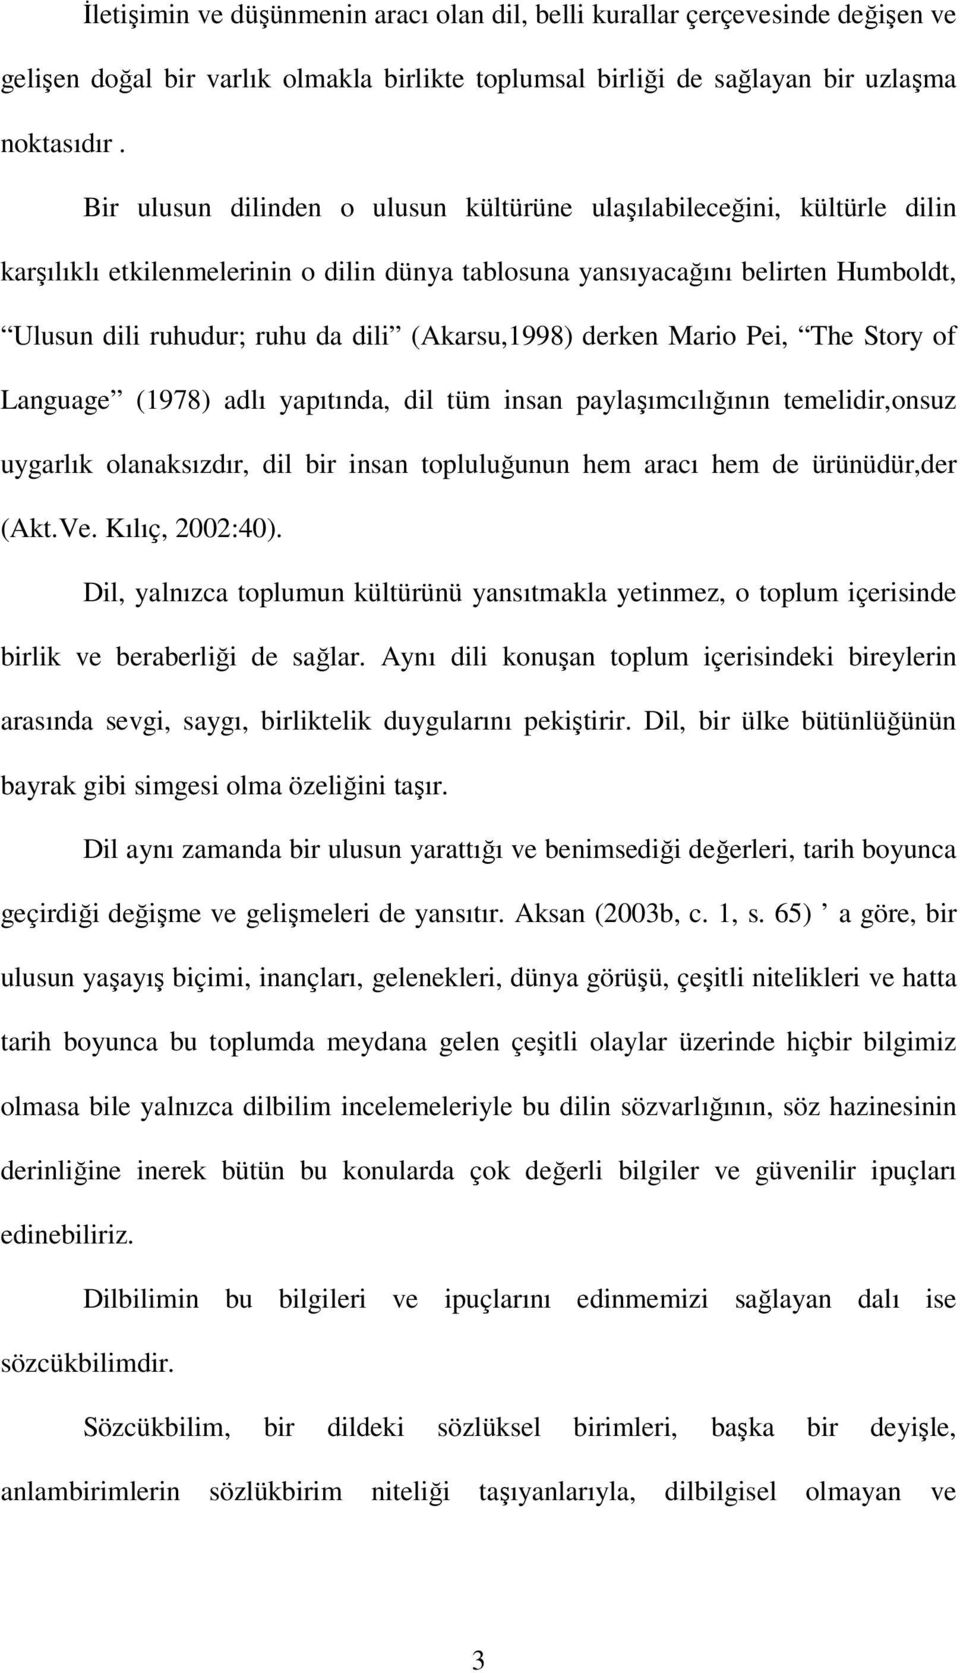 (Akarsu,1998) derken Mario Pei, The Story of Language (1978) adlı yapıtında, dil tüm insan paylaşımcılığının temelidir,onsuz uygarlık olanaksızdır, dil bir insan topluluğunun hem aracı hem de